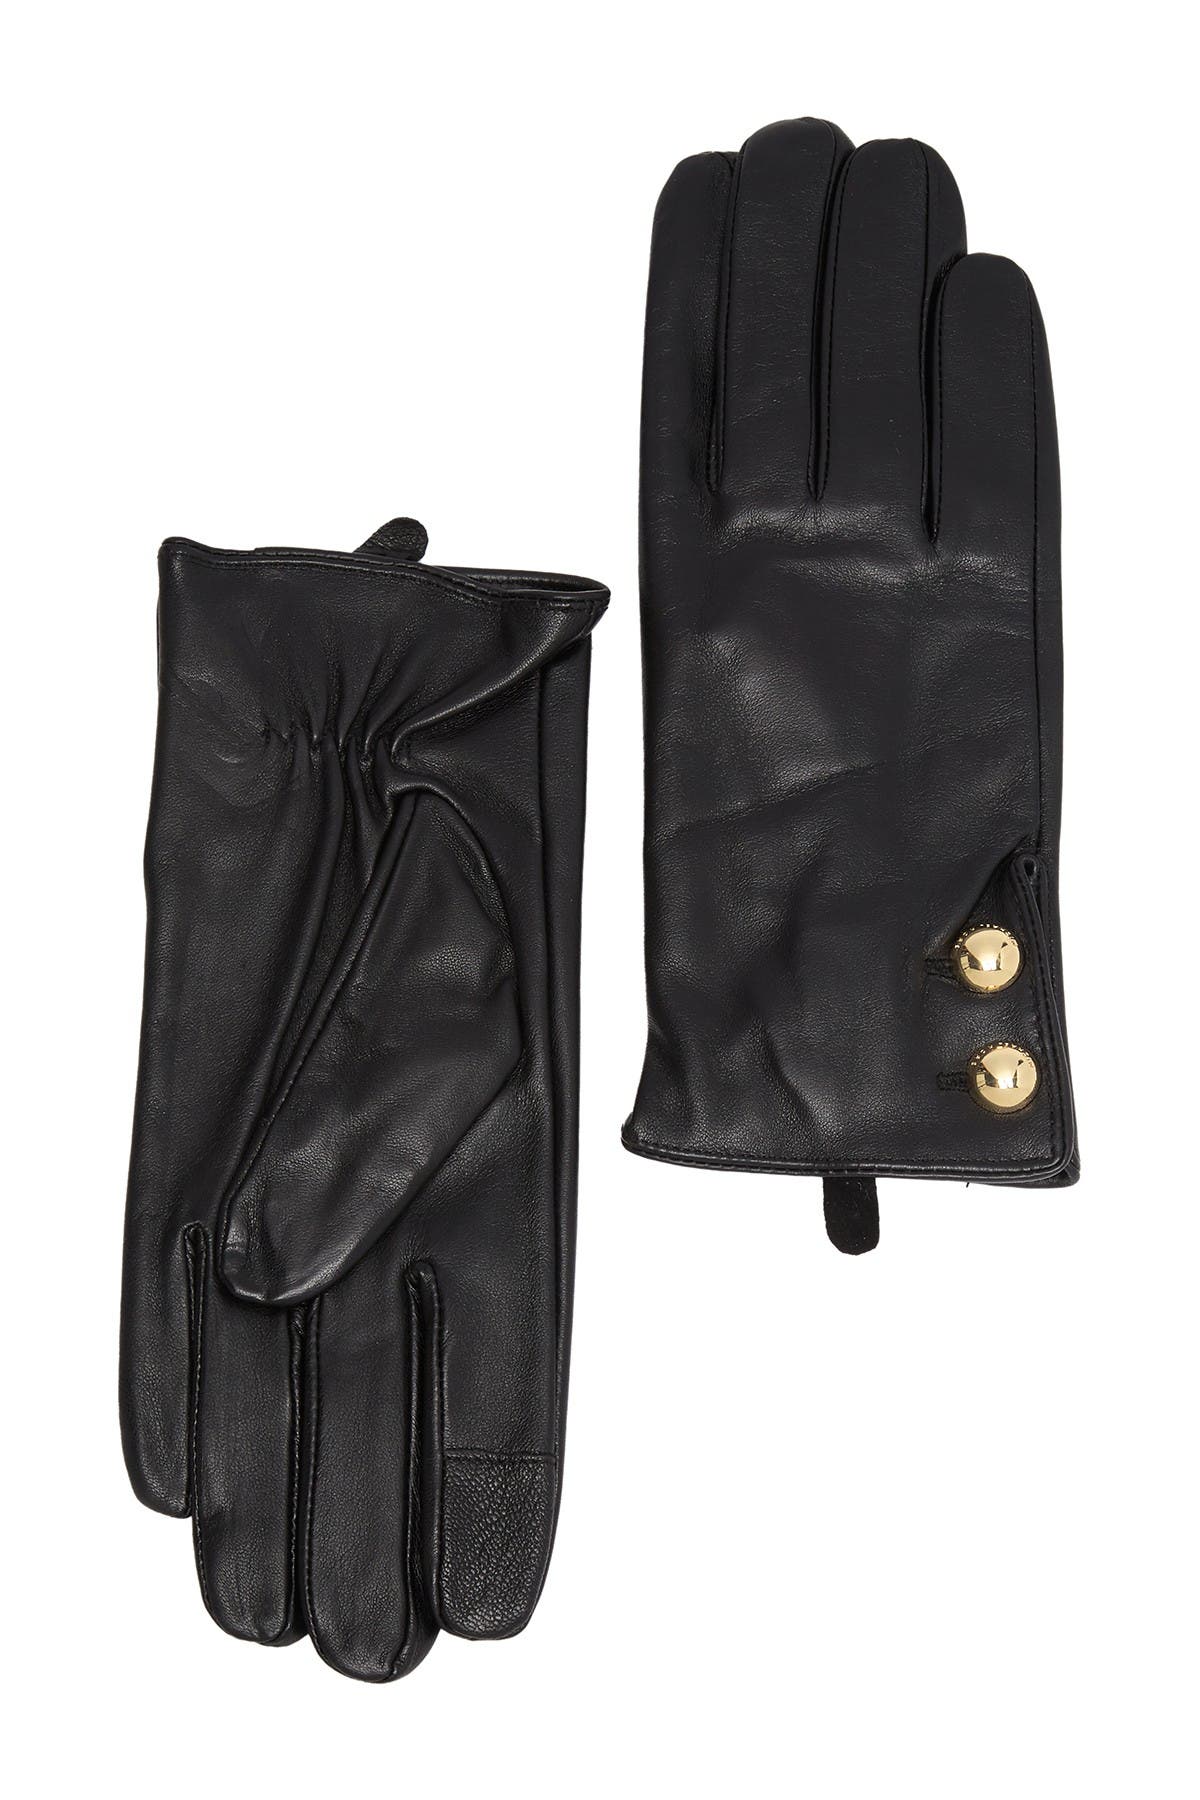 michael kors women's leather gloves